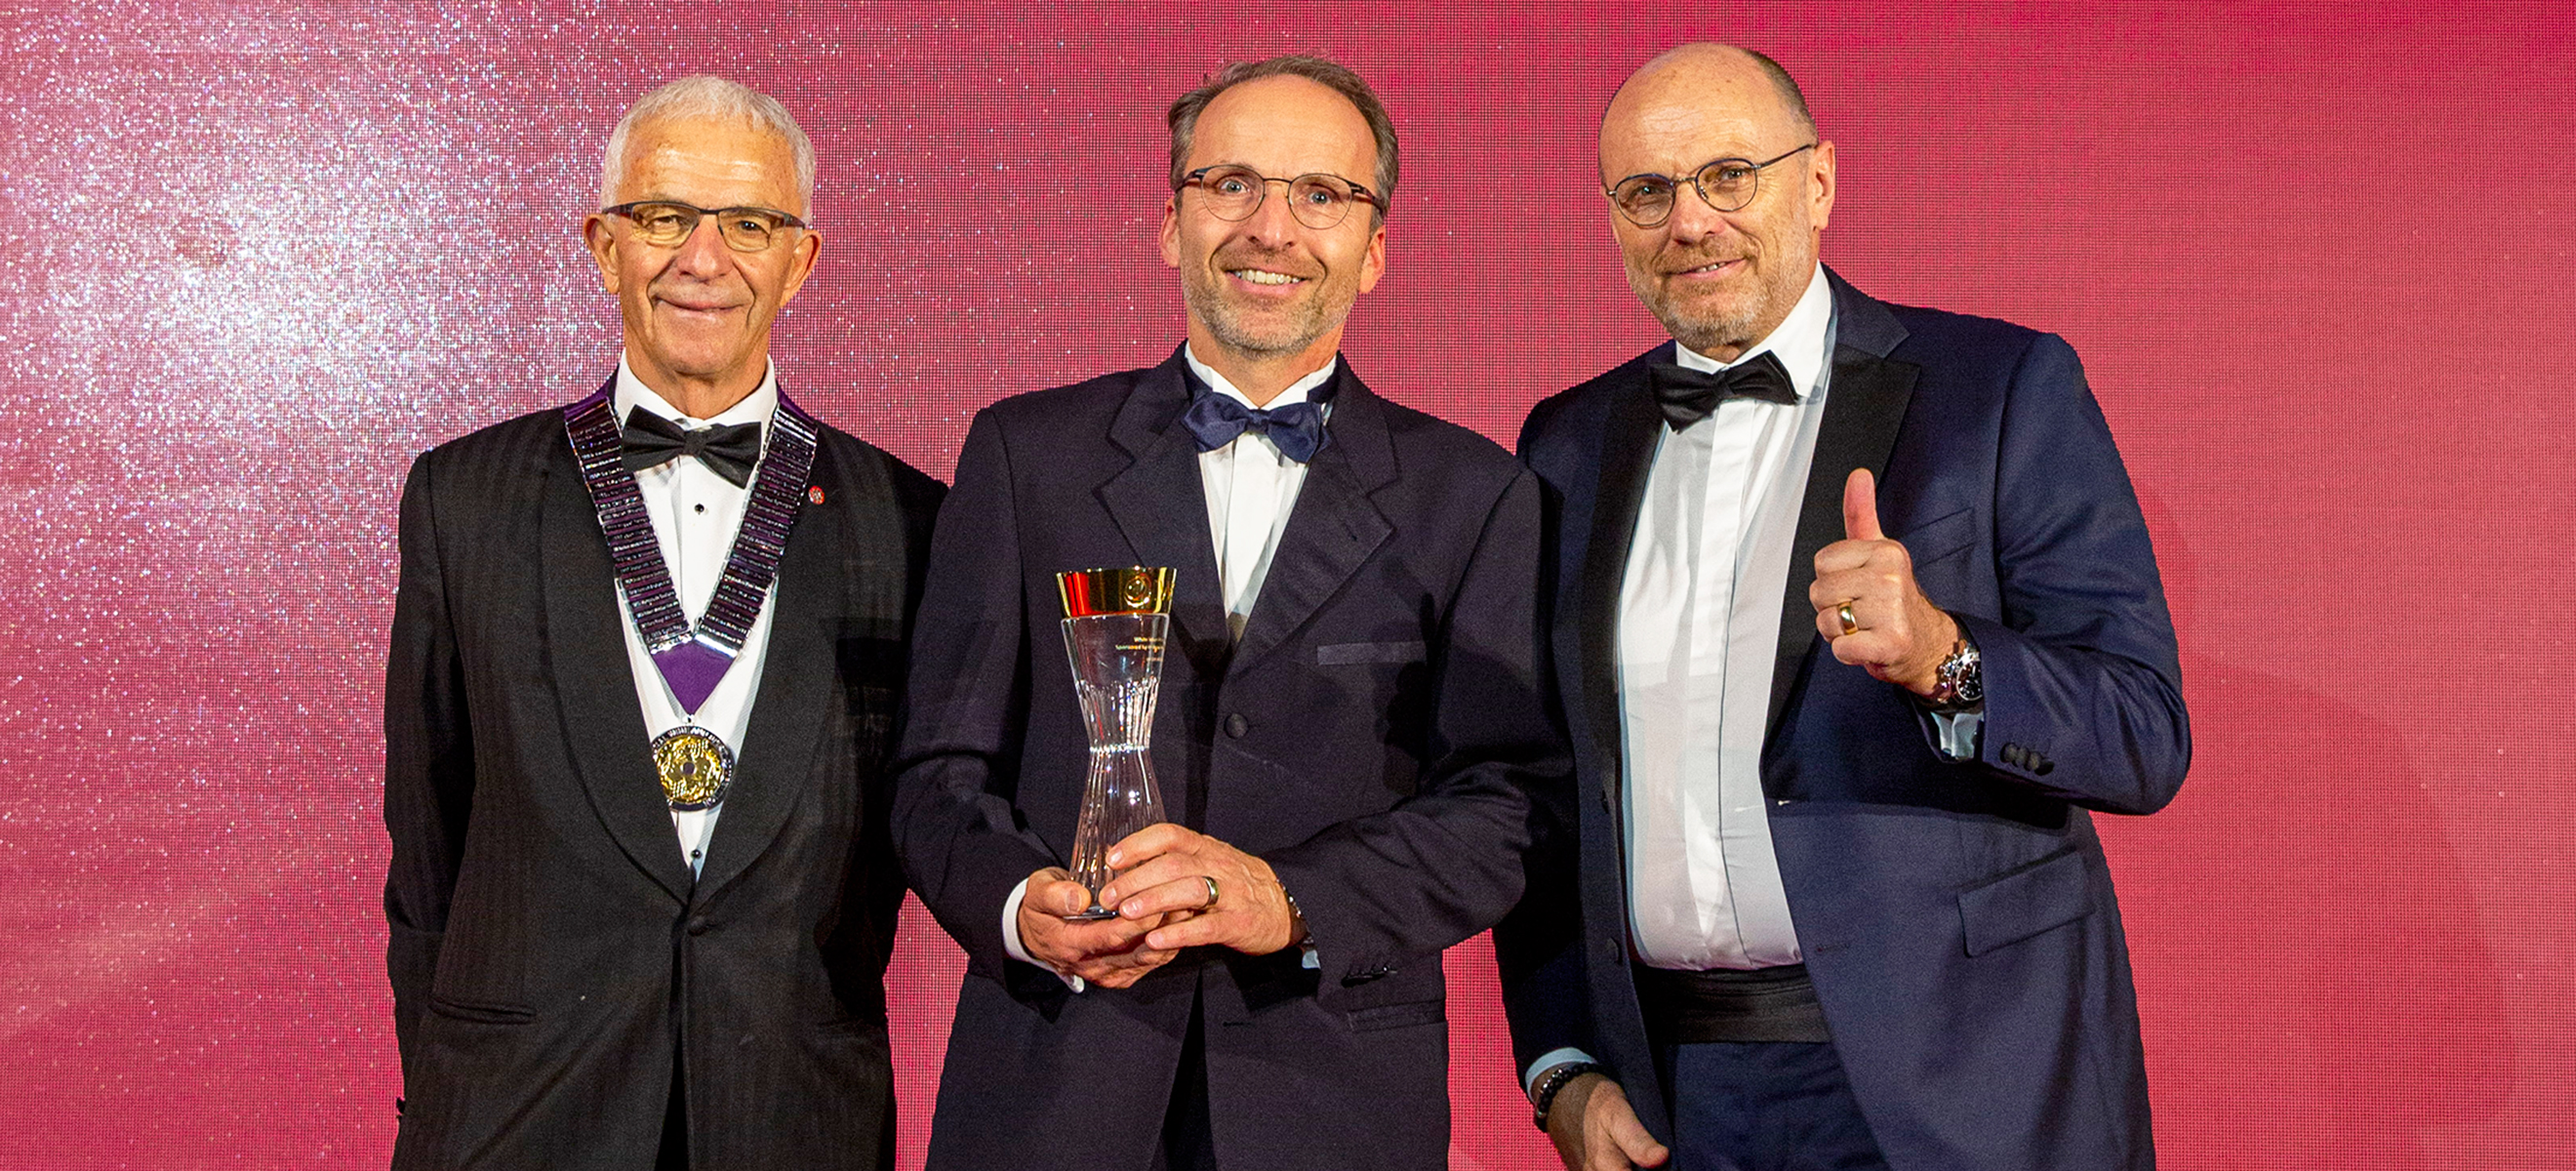 Rudolf Rabl mit Award bei der »International Wine & Spirit Competition« in London.